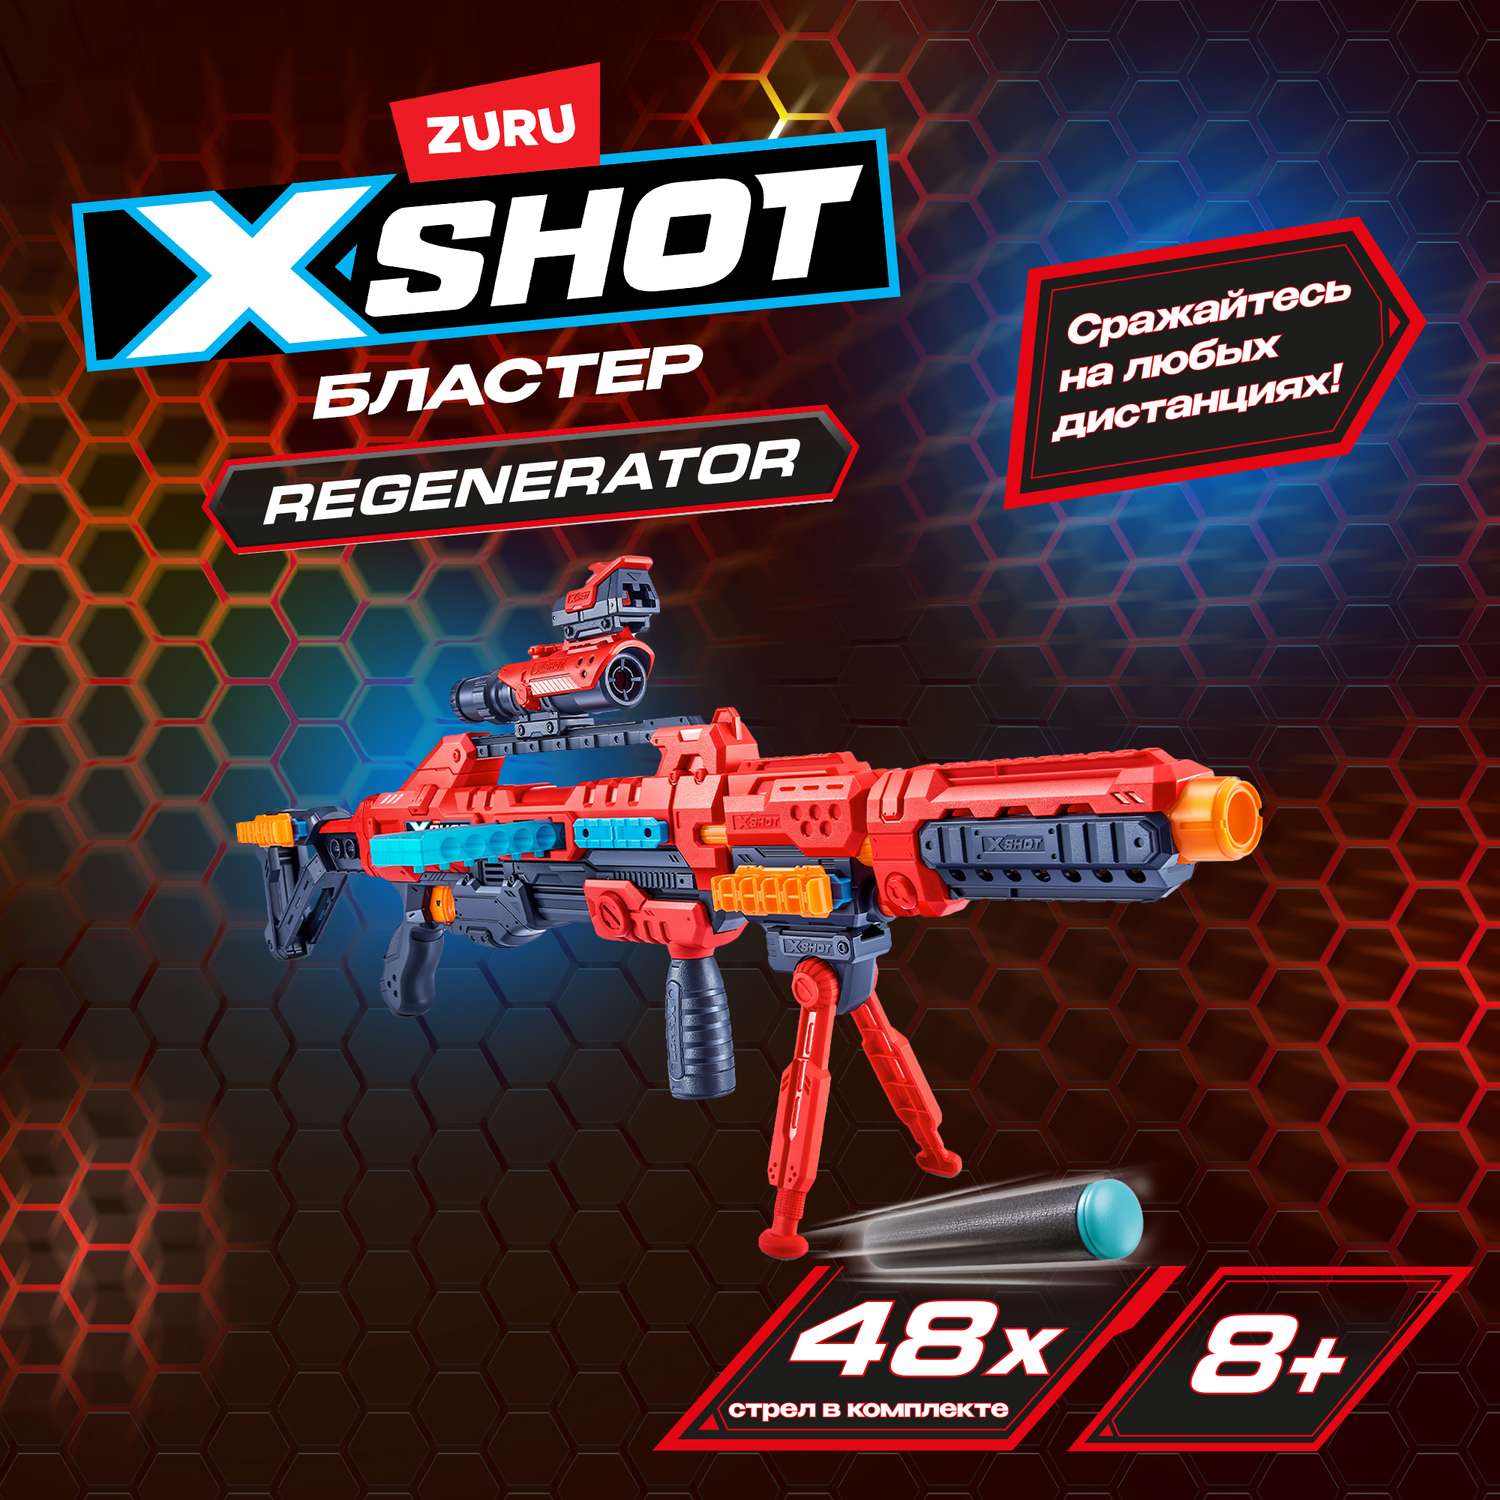 Набор для стрельбы X-SHOT  Регенератор 36173-2022 - фото 1